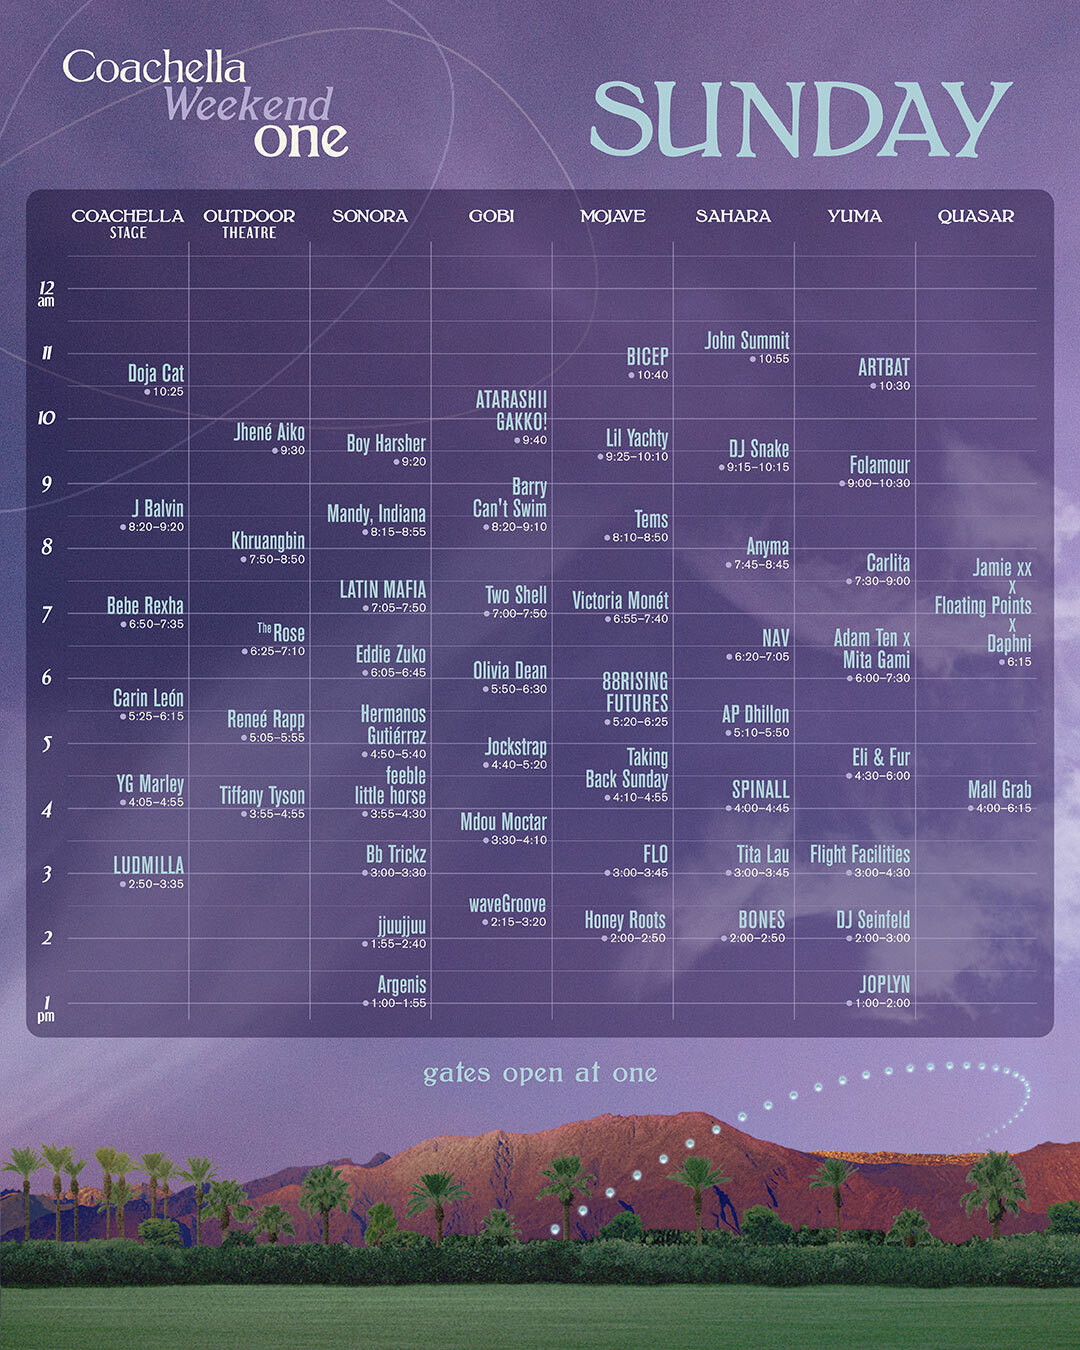 Coachella weekend schedule on one Sunday